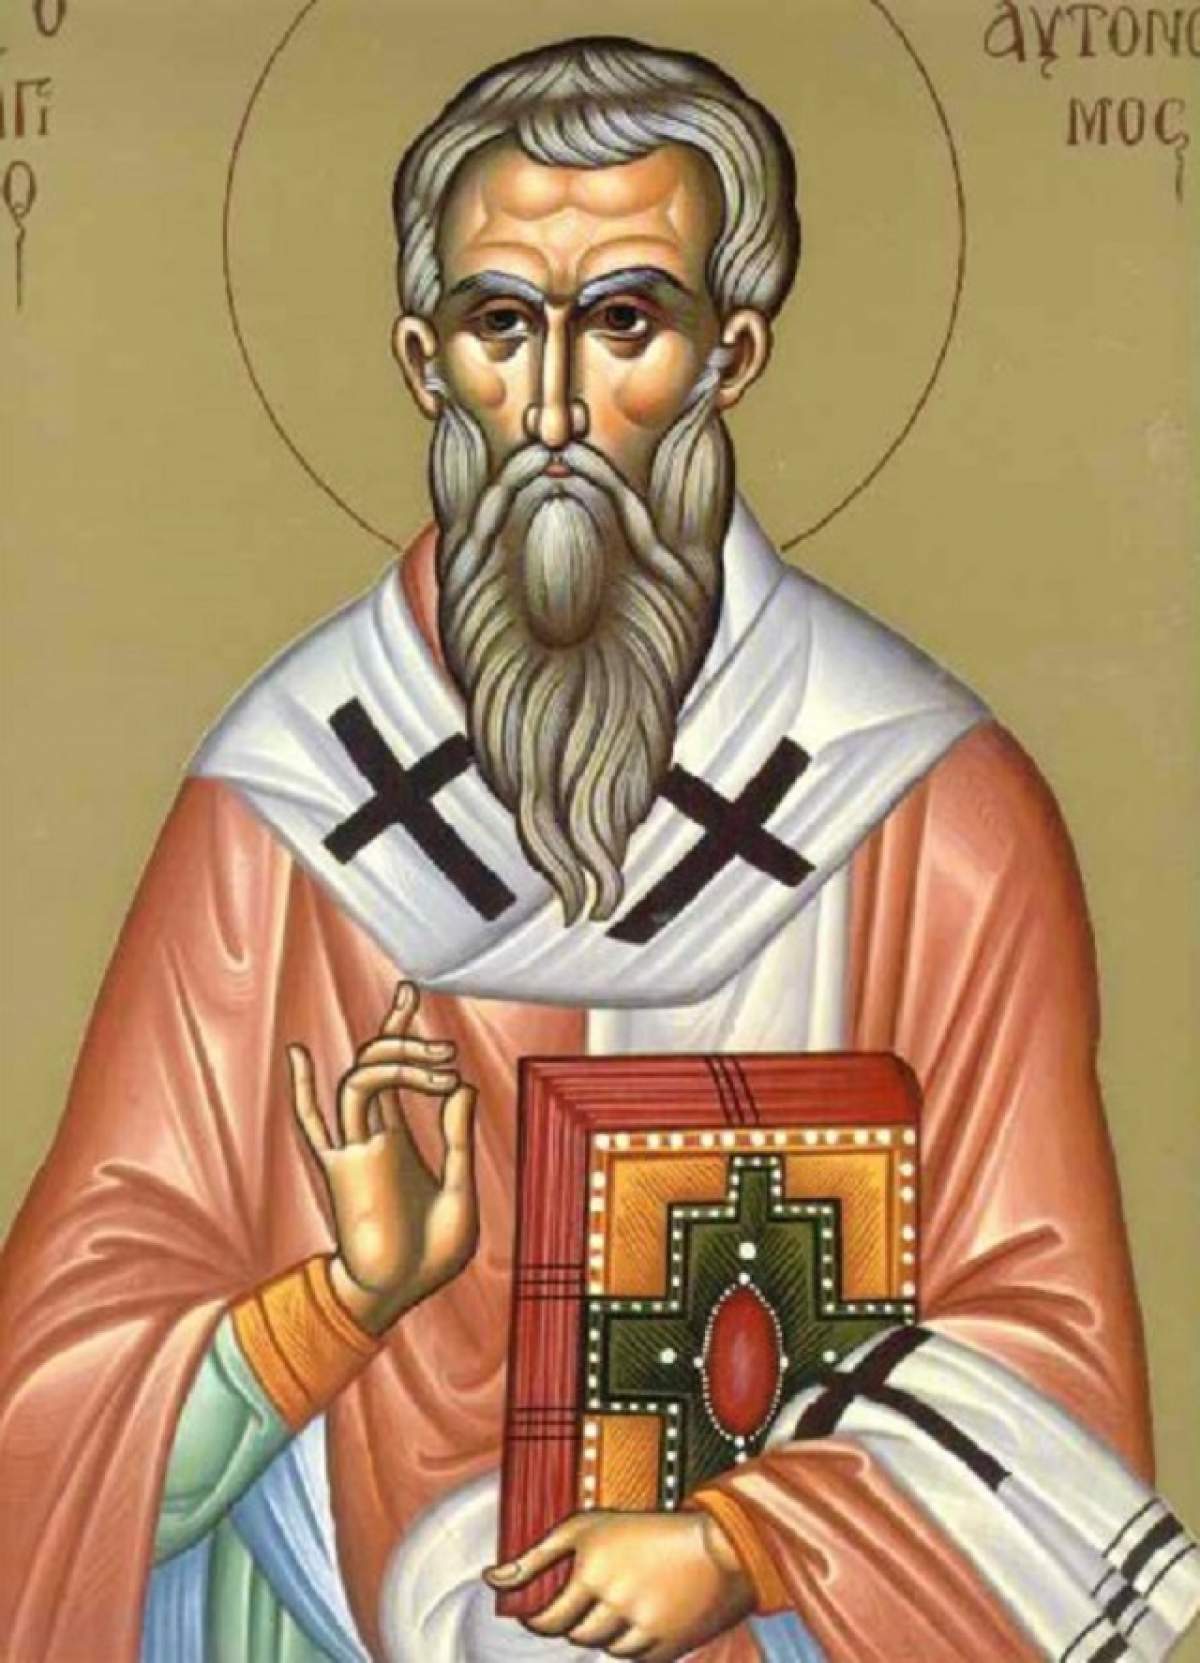 Sfântul Mucenic Avtonom este pomenit în calendarul creștin ortodox în ziua de 12 septembrie